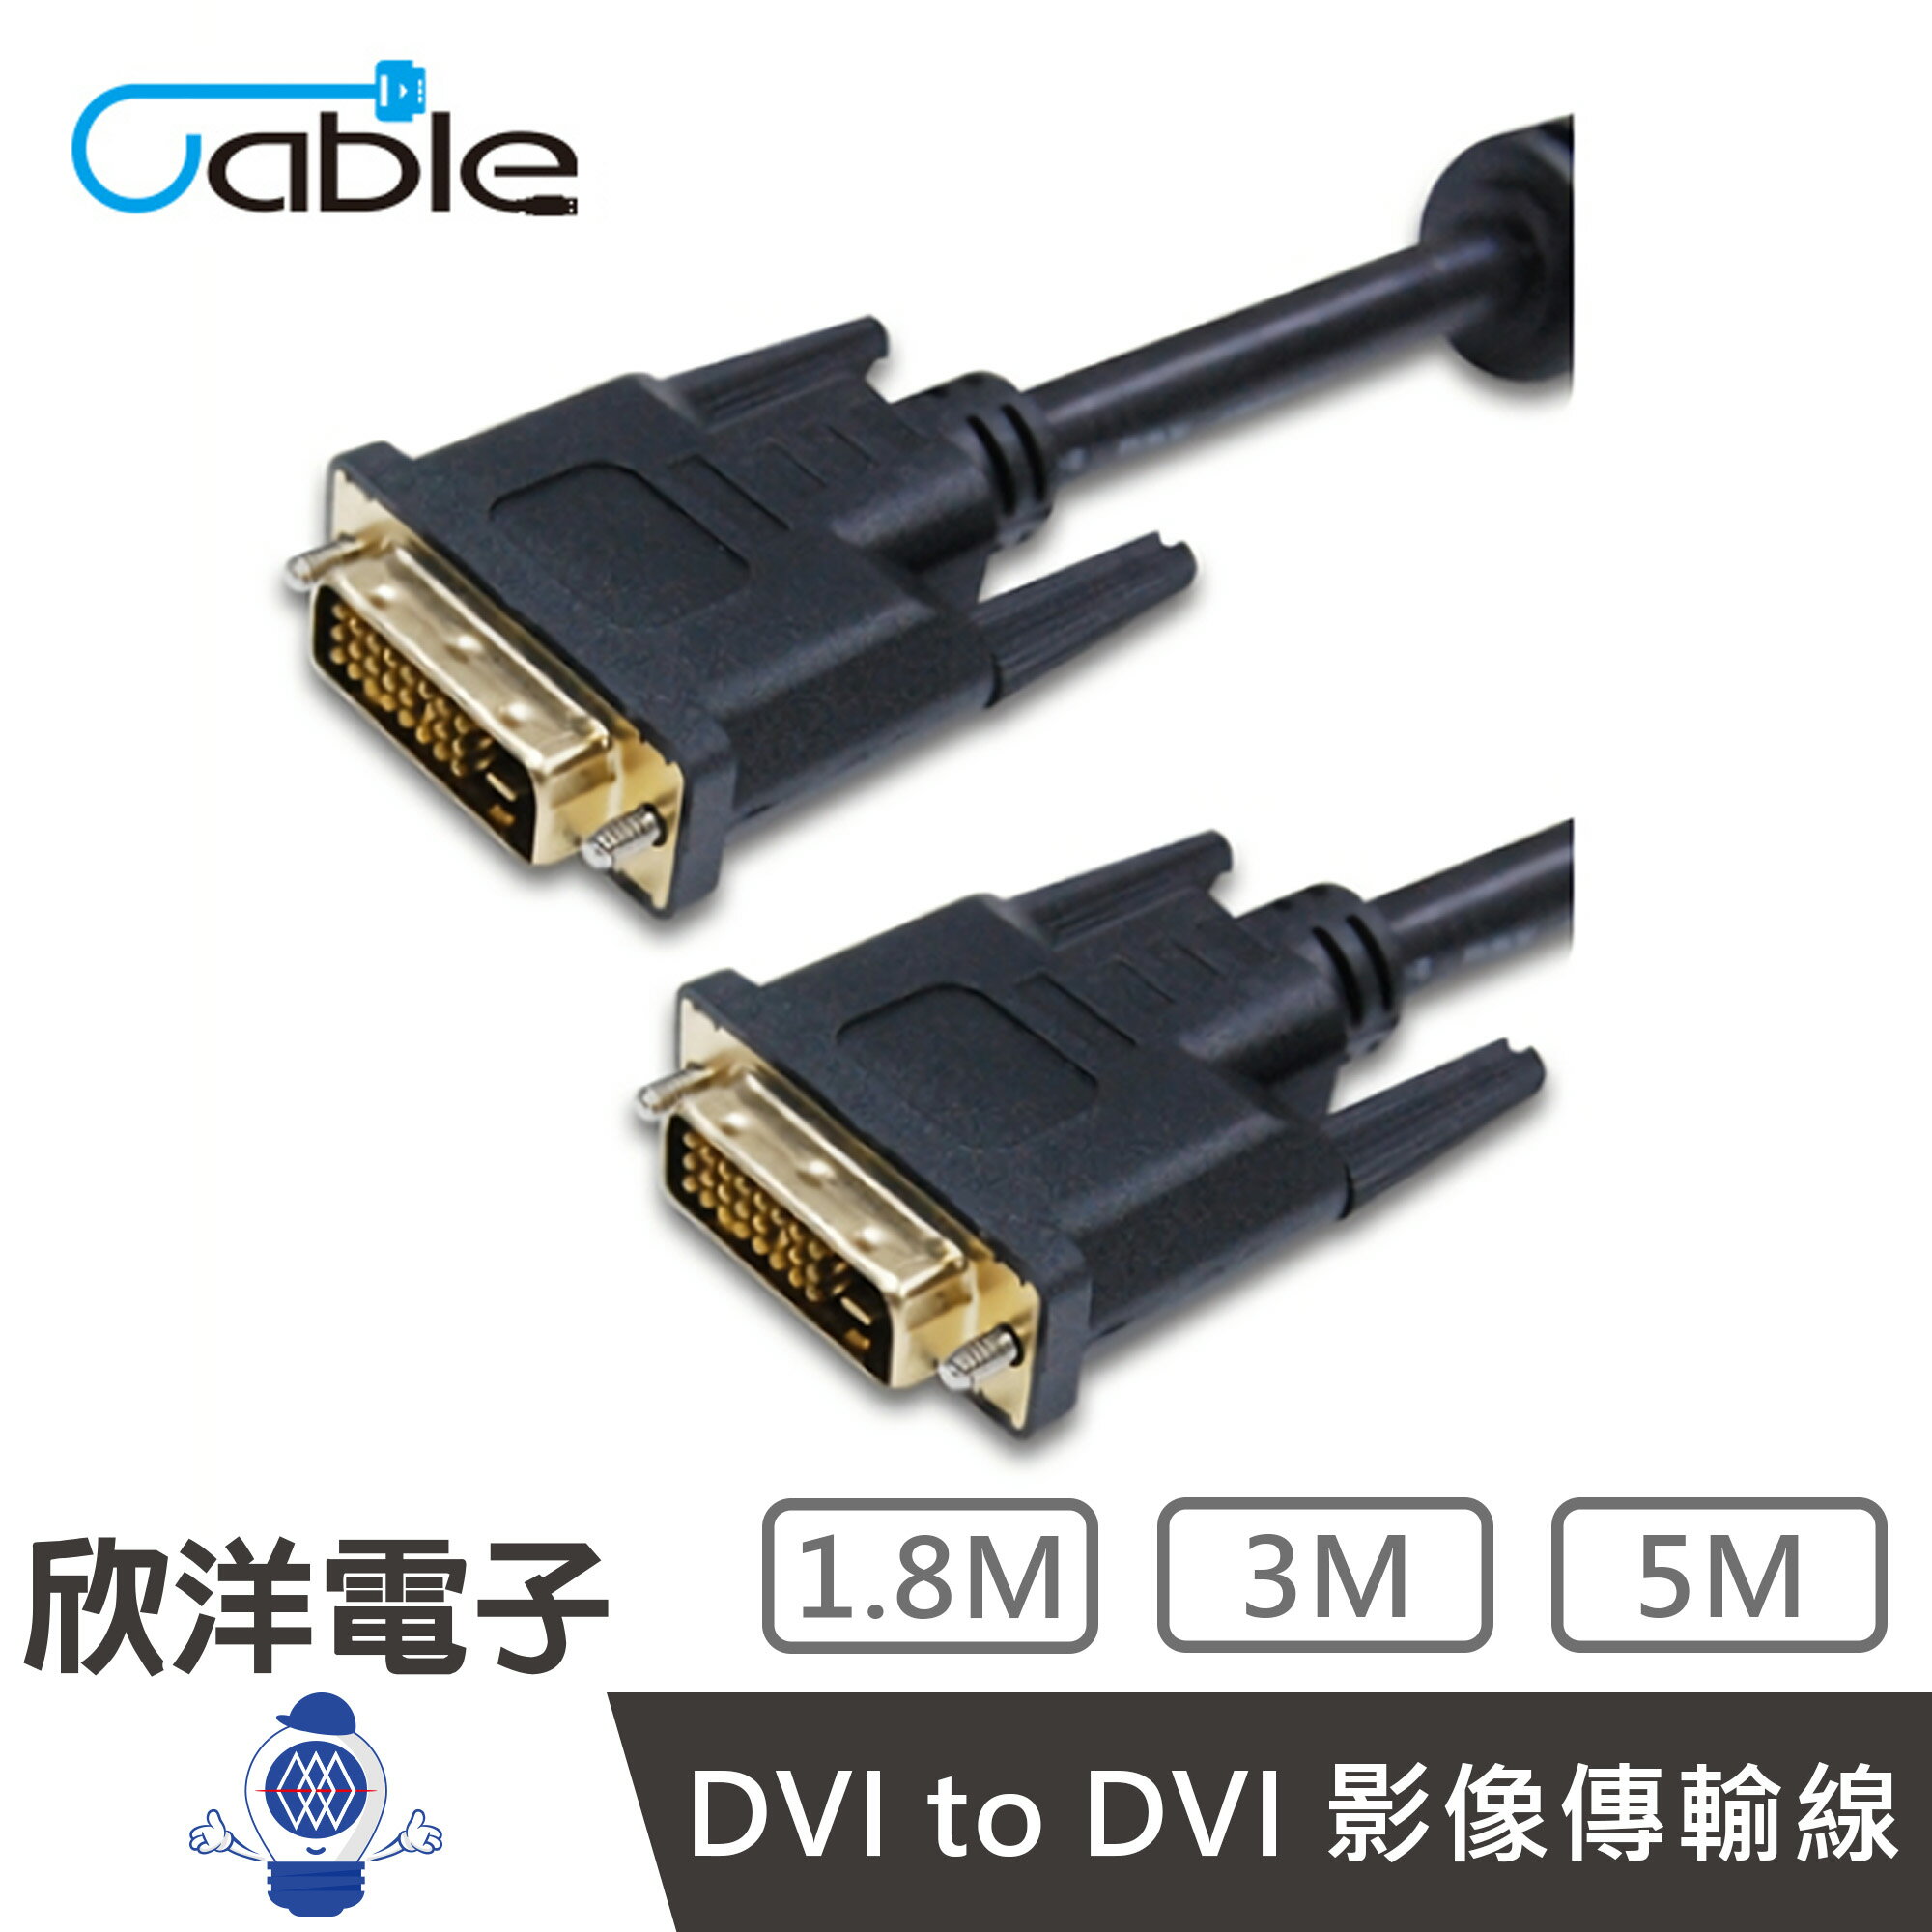 ※ 欣洋電子 ※ Cable DVI-DVI 高畫質數位影像傳輸線材 (DVI2424PP05) 5米/公尺/m 符合ROHS認證/24K全鍍金連結頭